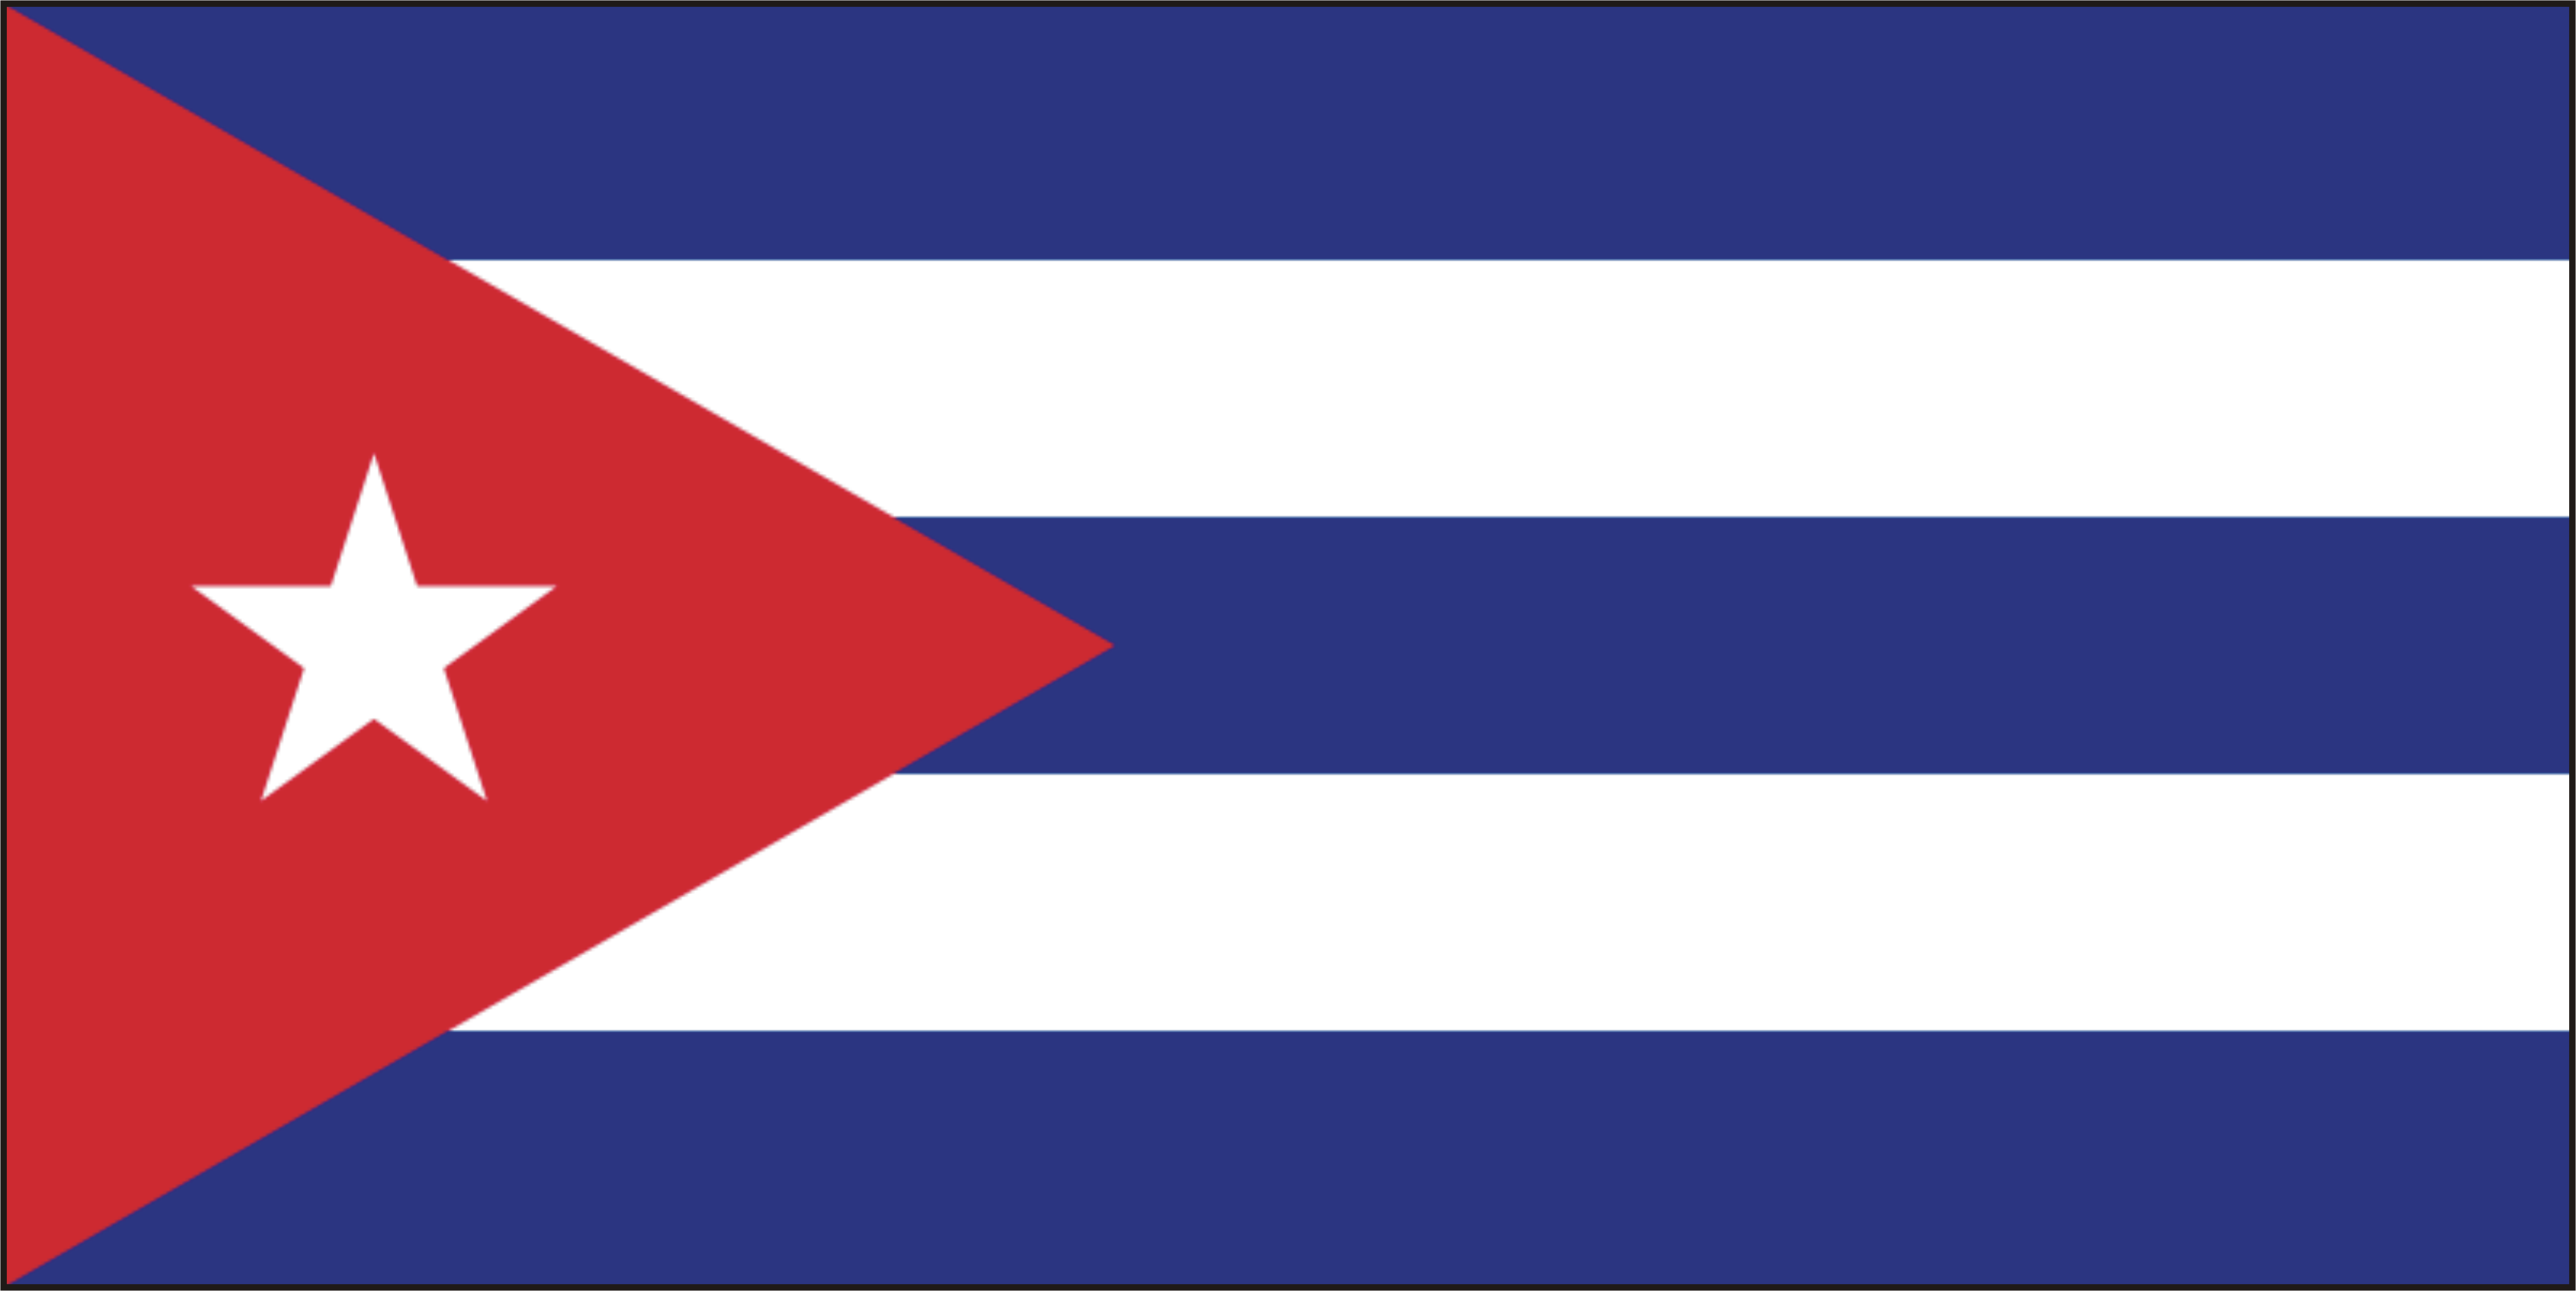 Cu-ba (Cuba) | Hồ sơ - Sự kiện - Nhân chứng